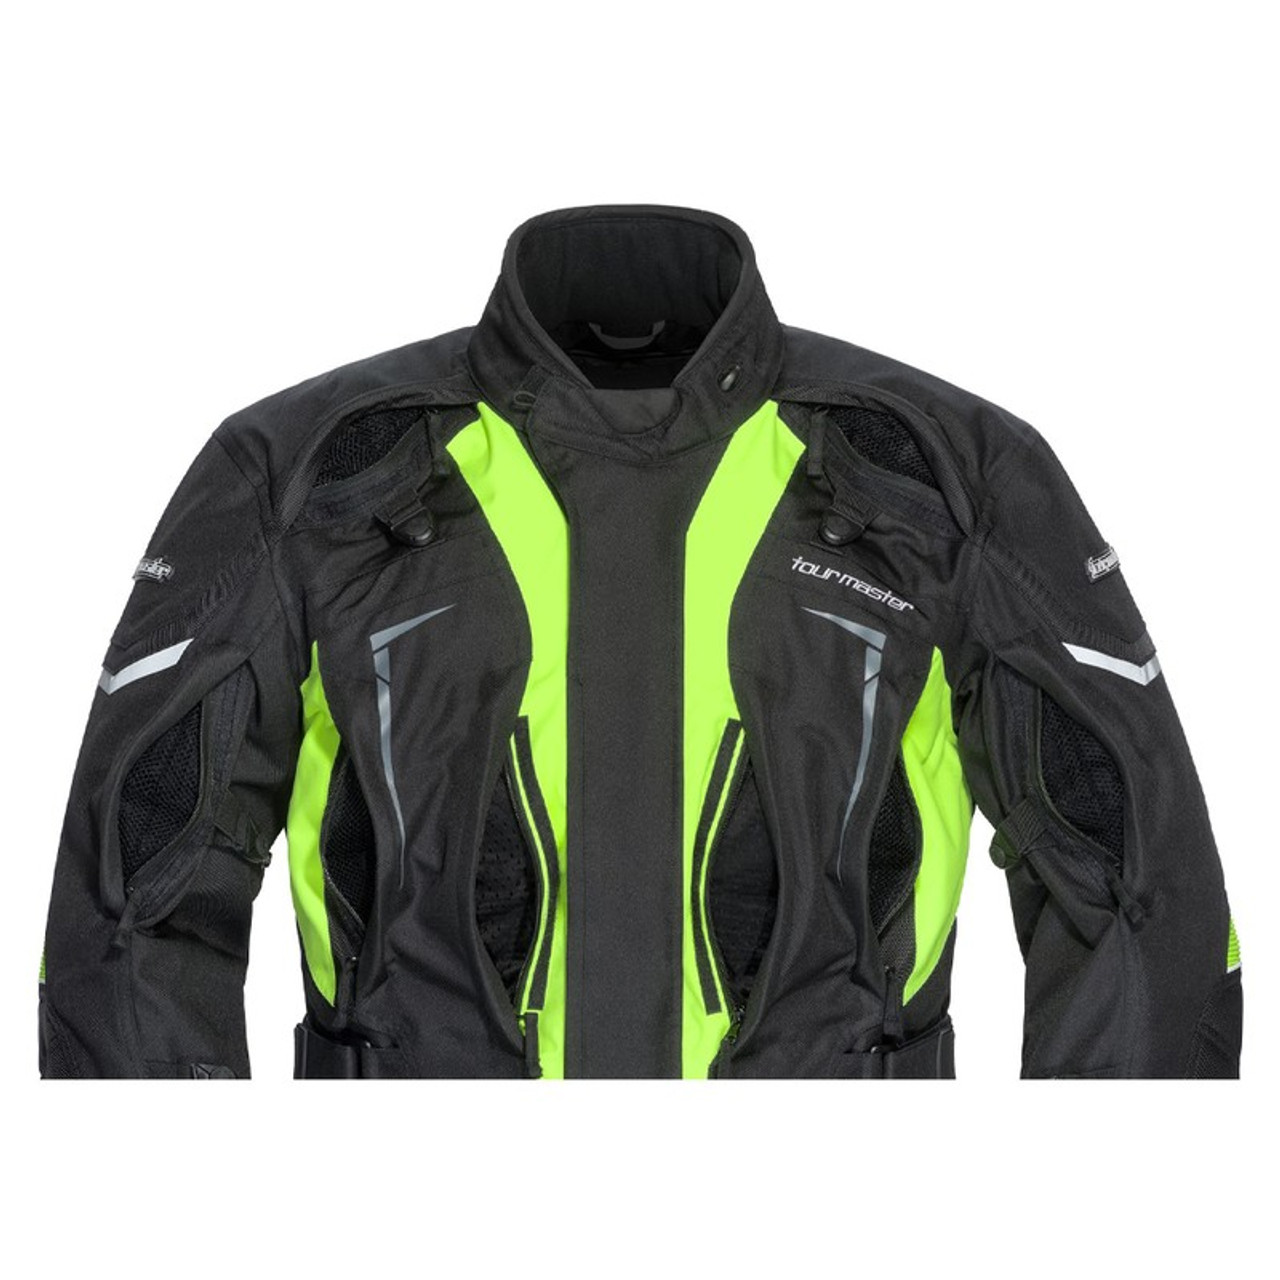 Transition 5 Women's Jacket - Discount Moto Gear